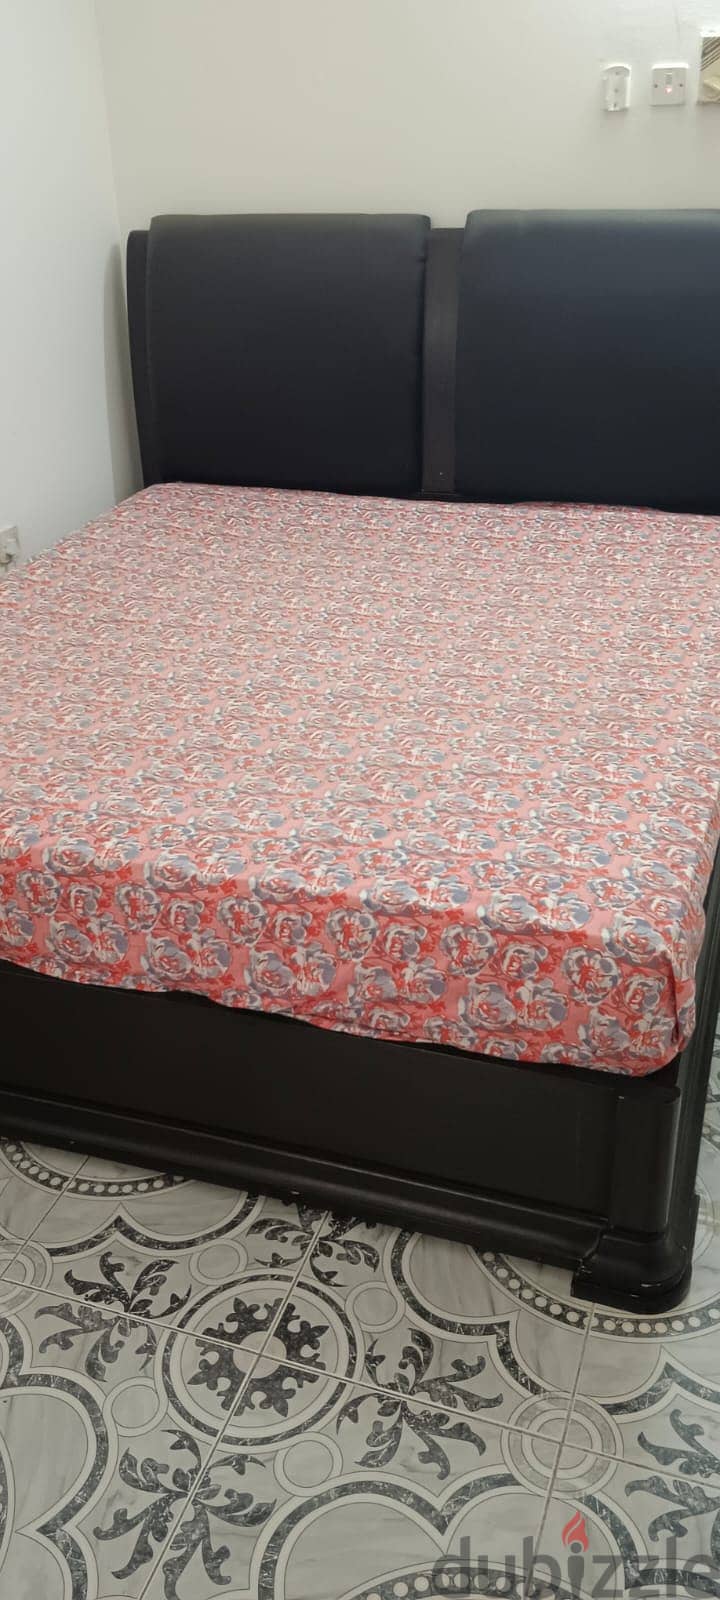 King Size medical mattress(200*180) 1